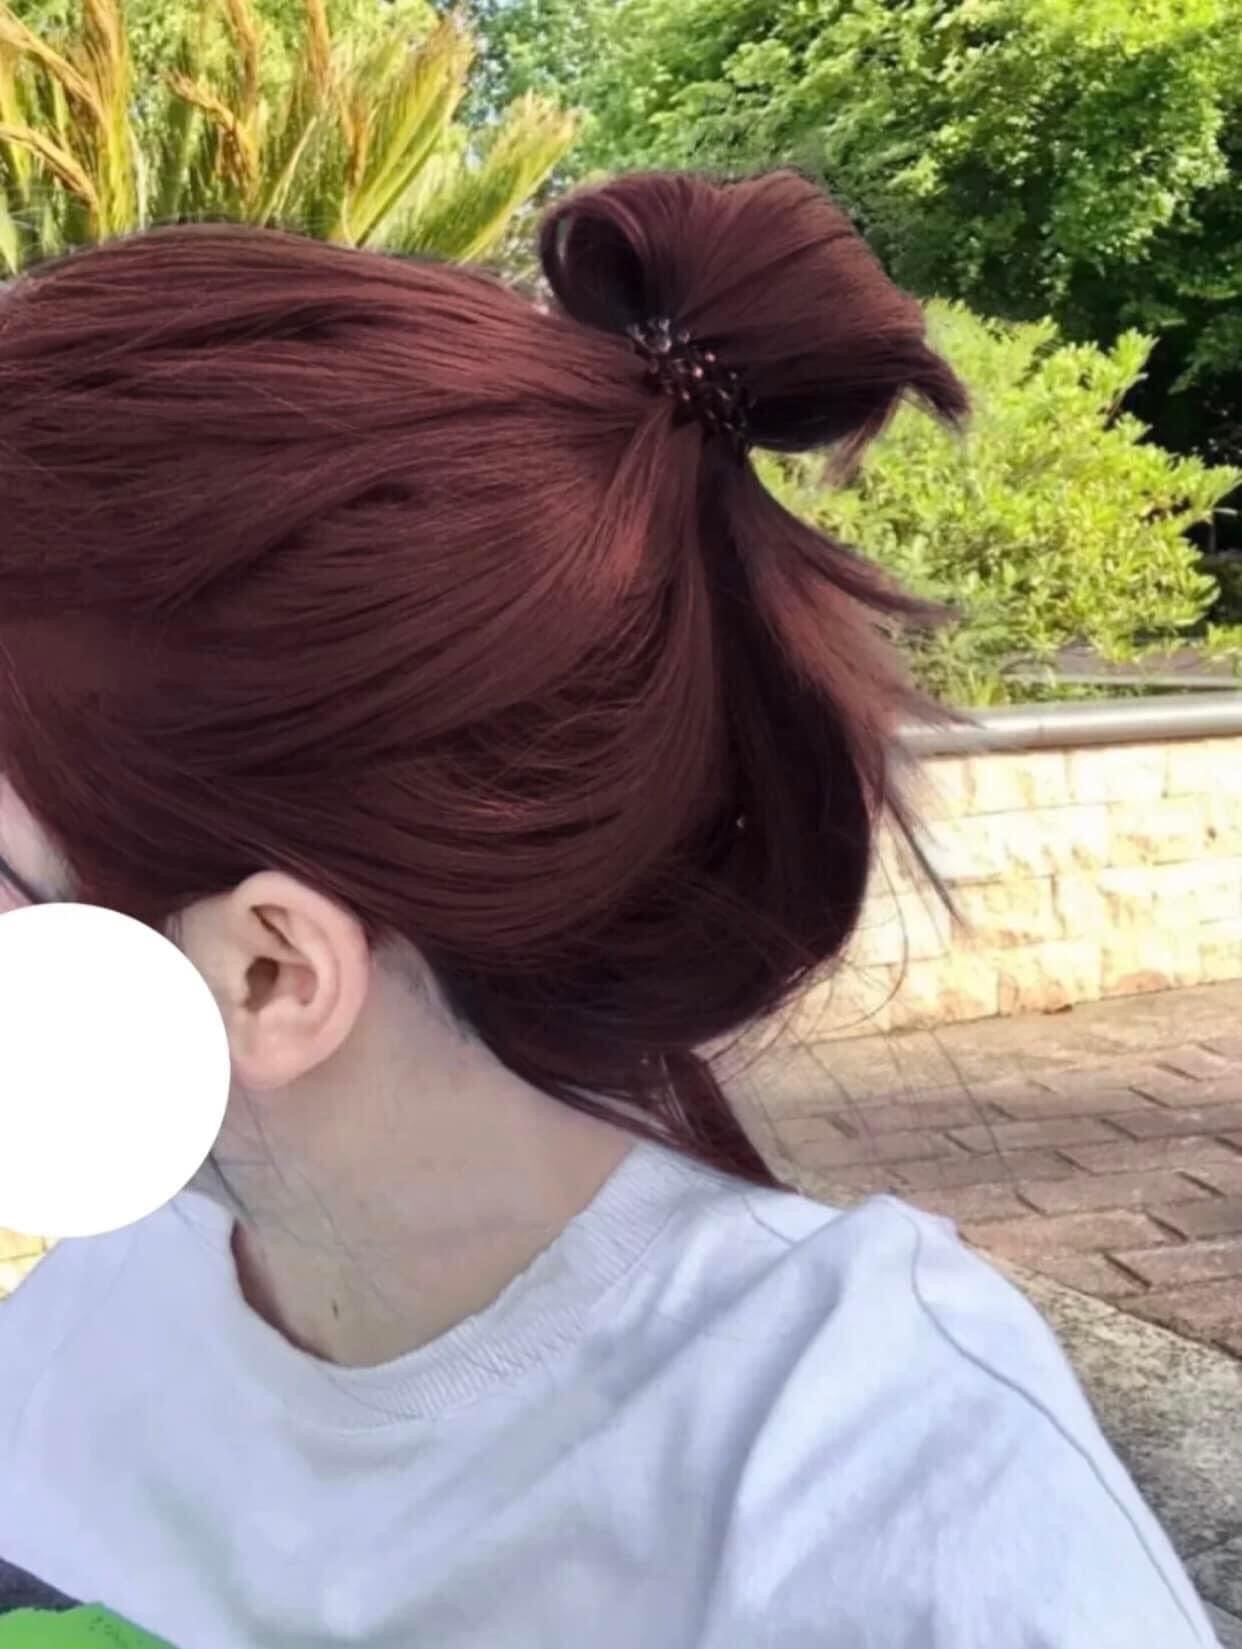 Top 15+ màu tóc nâu đỏ đẹp nhất mà bạn nên thử